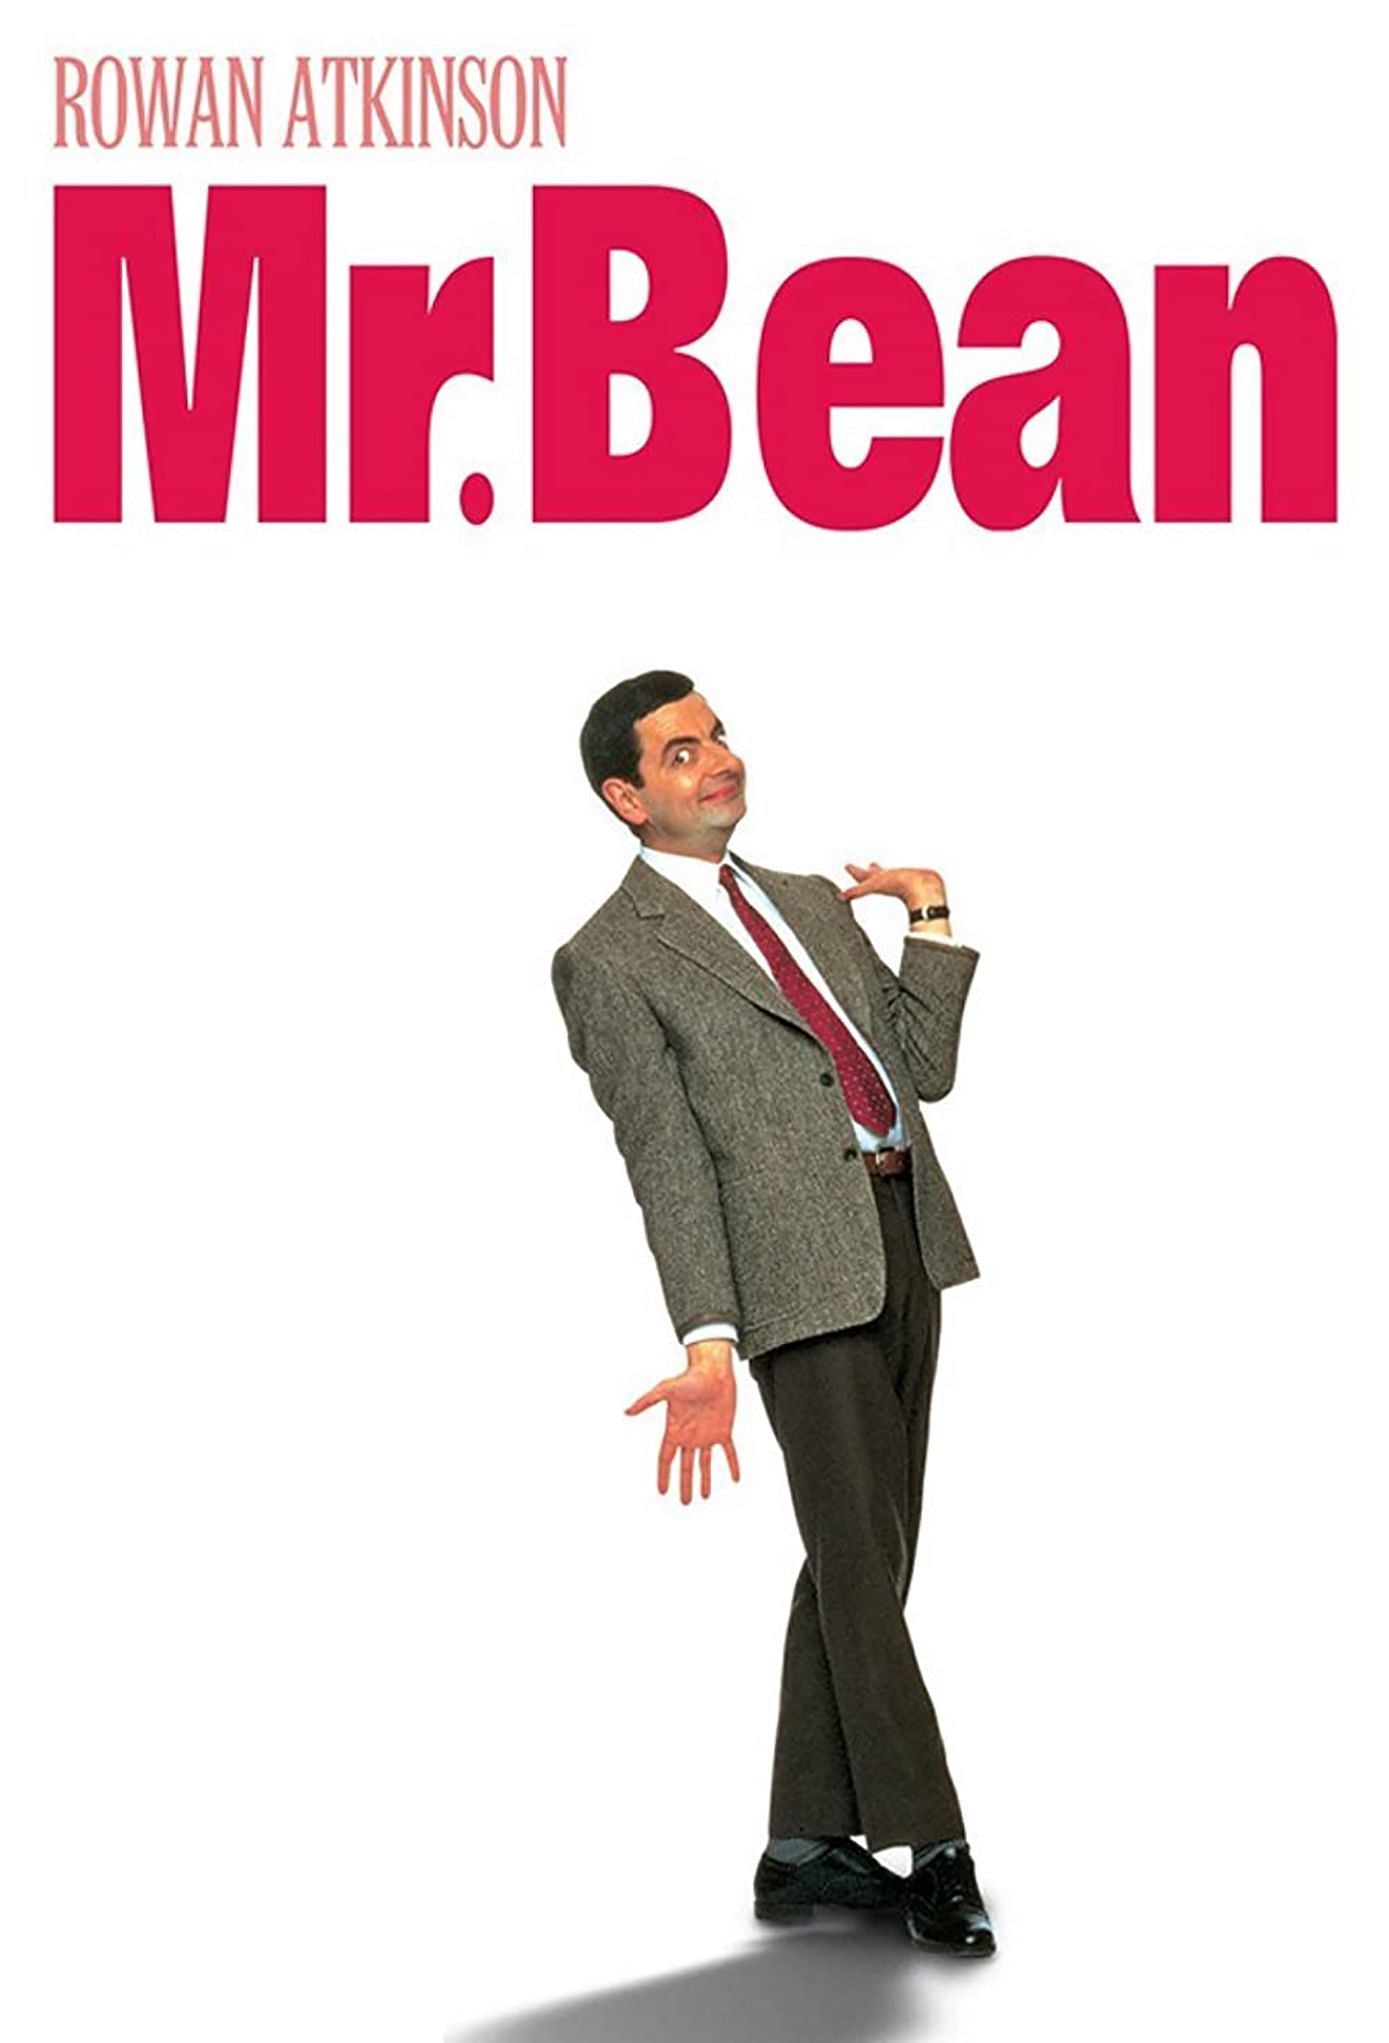 Mr. Bean (Image via ITV)